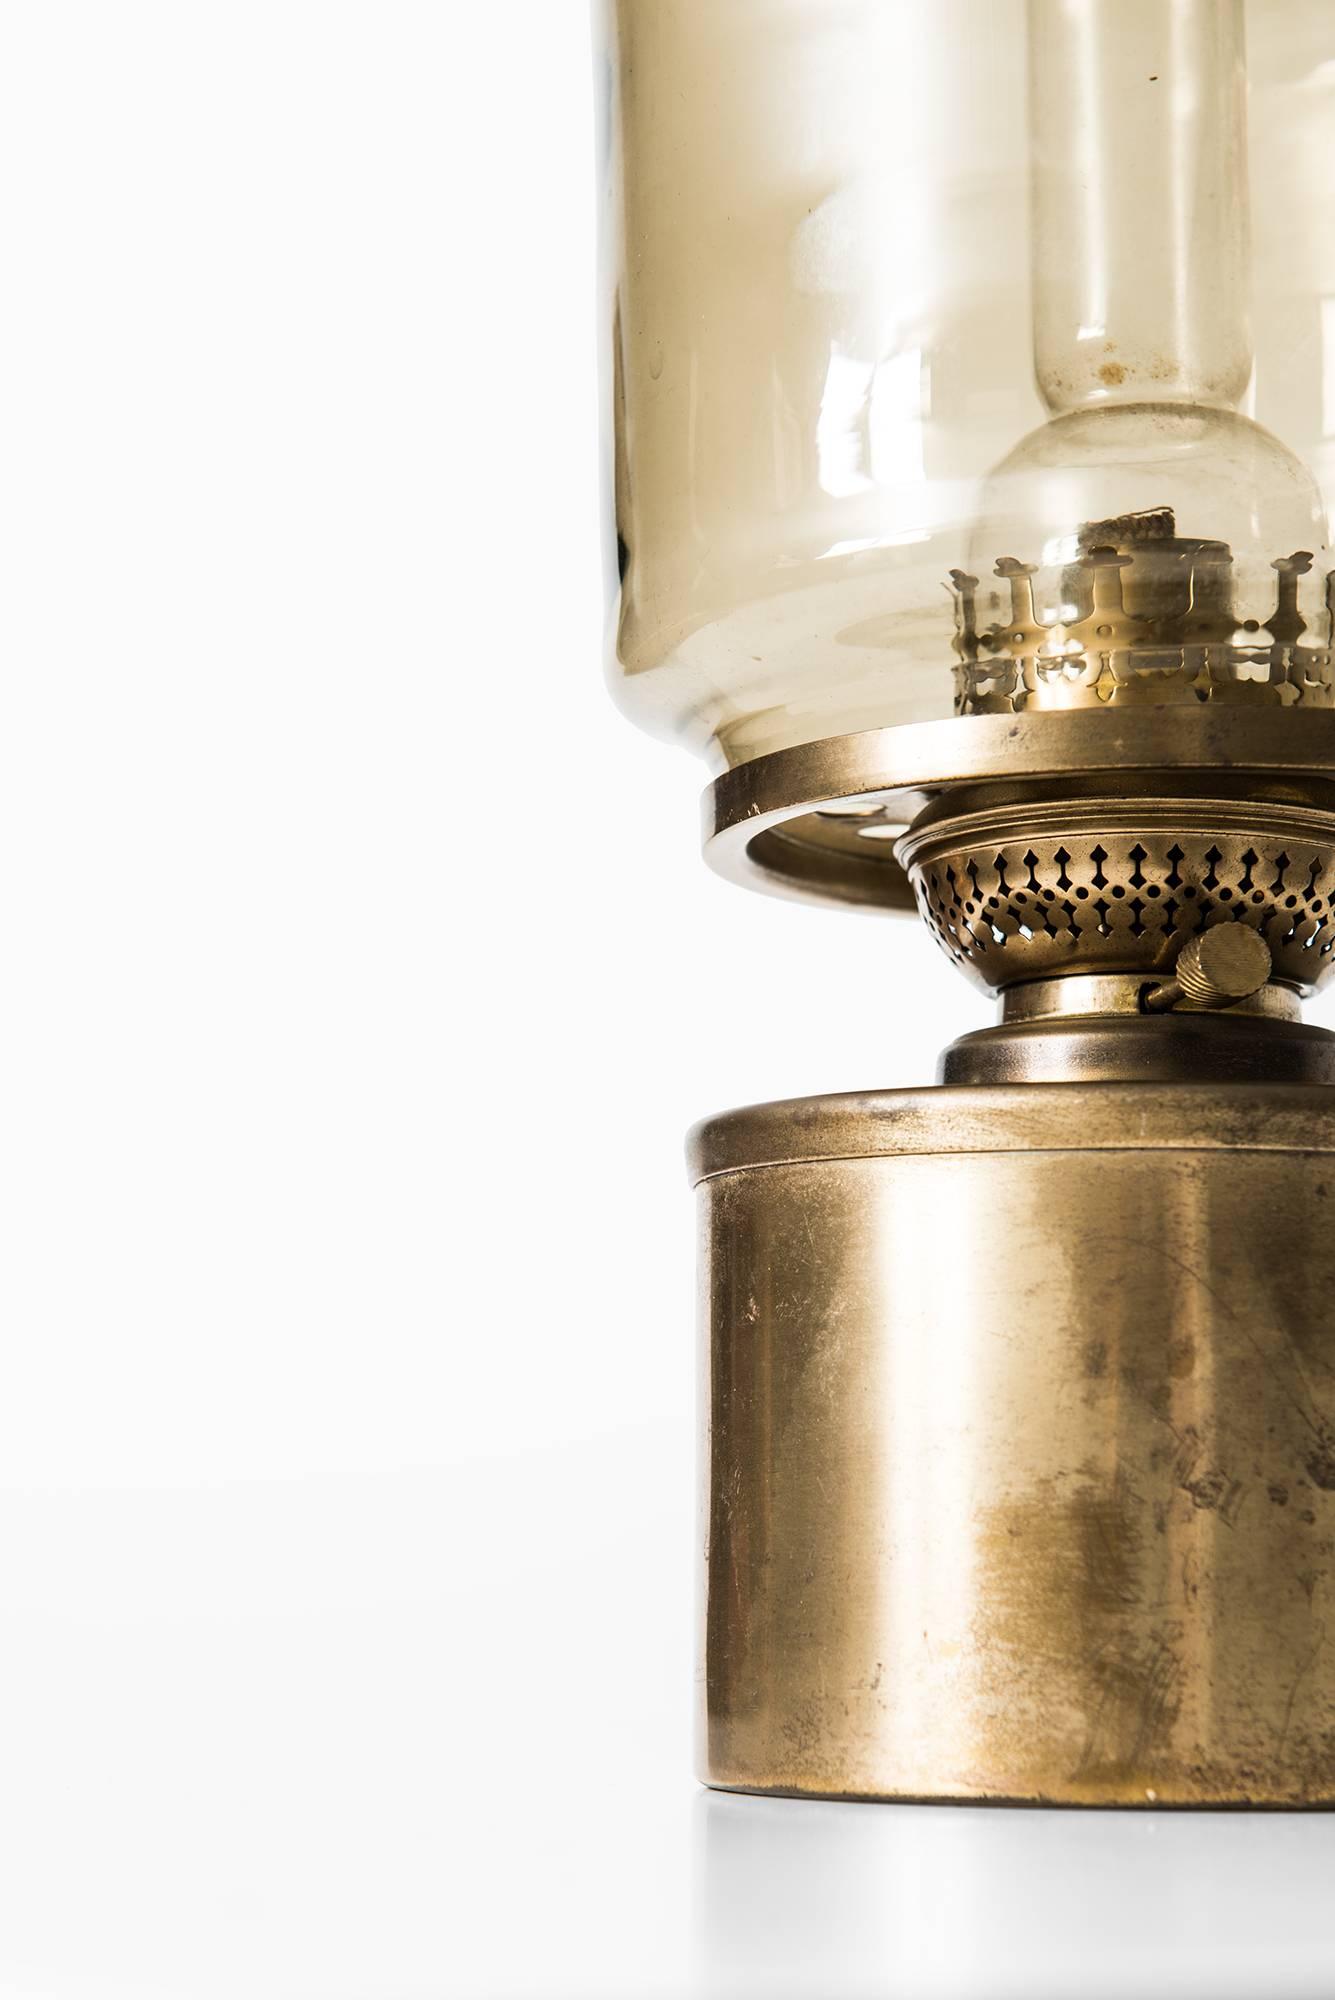 Rare kerosene or oil lamp model L-47 designed by Hans-Agne Jakobsson. Produced by Hans-Agne Jakobsson in Markaryd, Sweden.